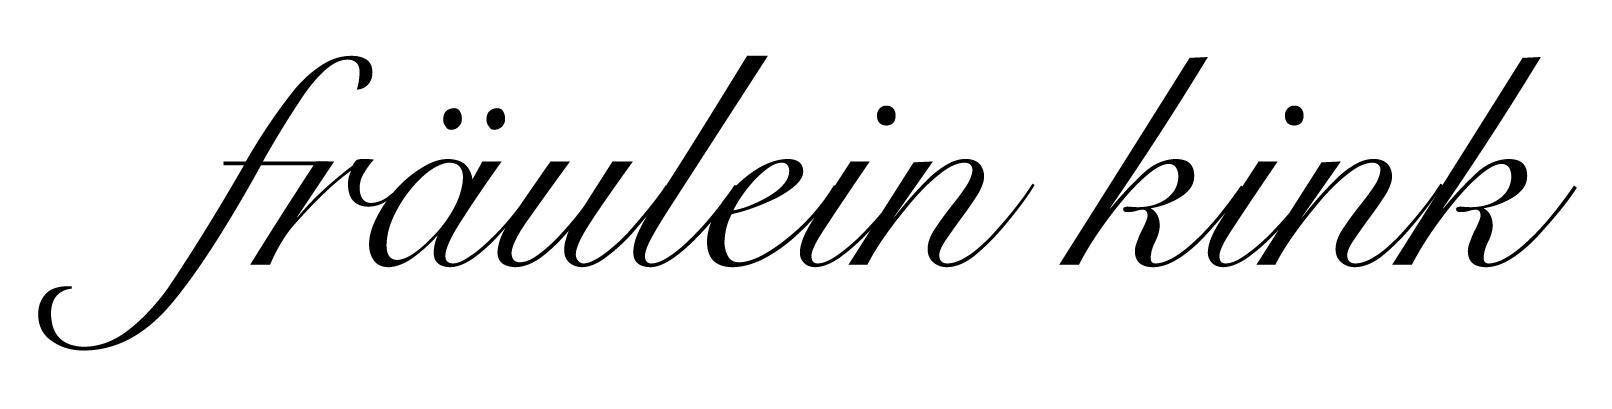 Fraulein Couture Logo - Fraulein Kink